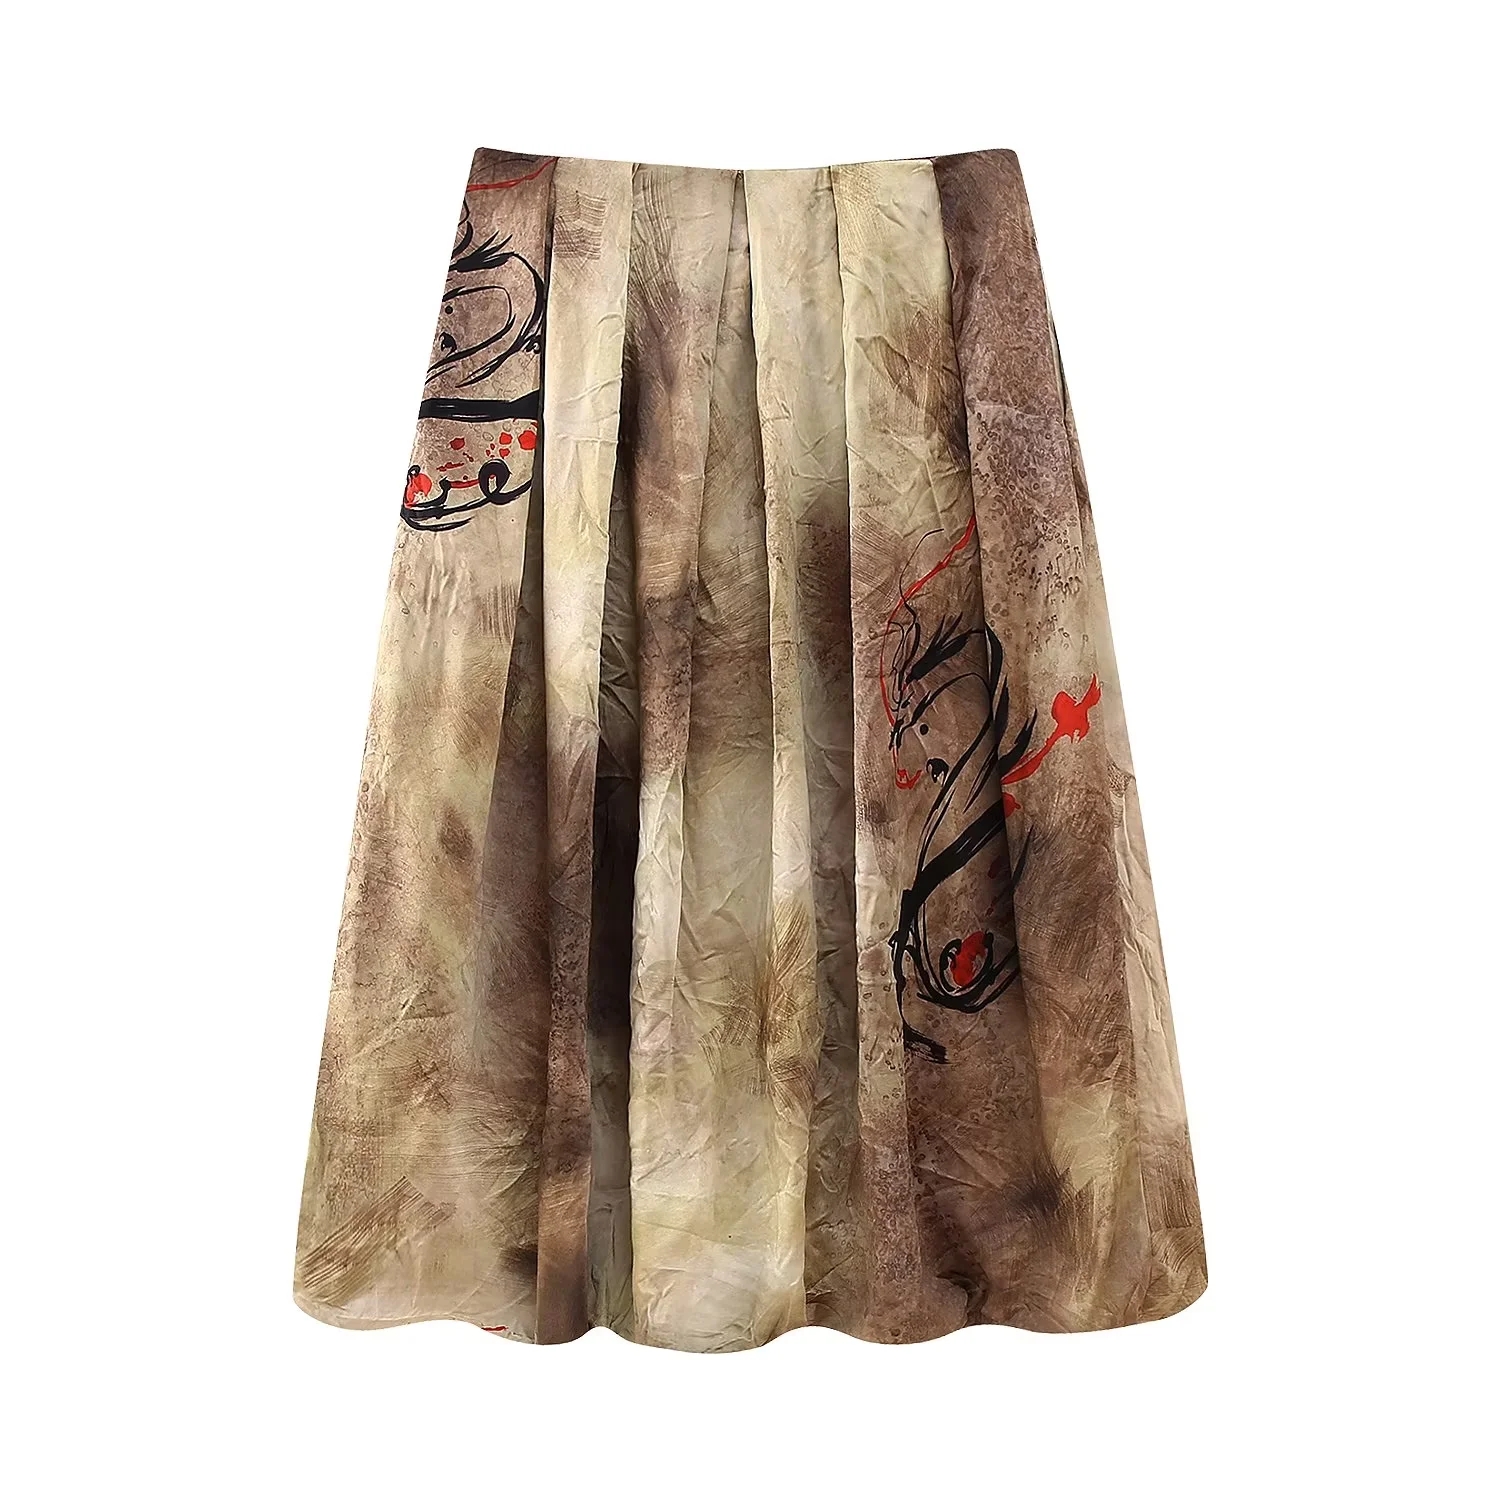 Fashion Brown Polyester Printed Skirt,Skirts